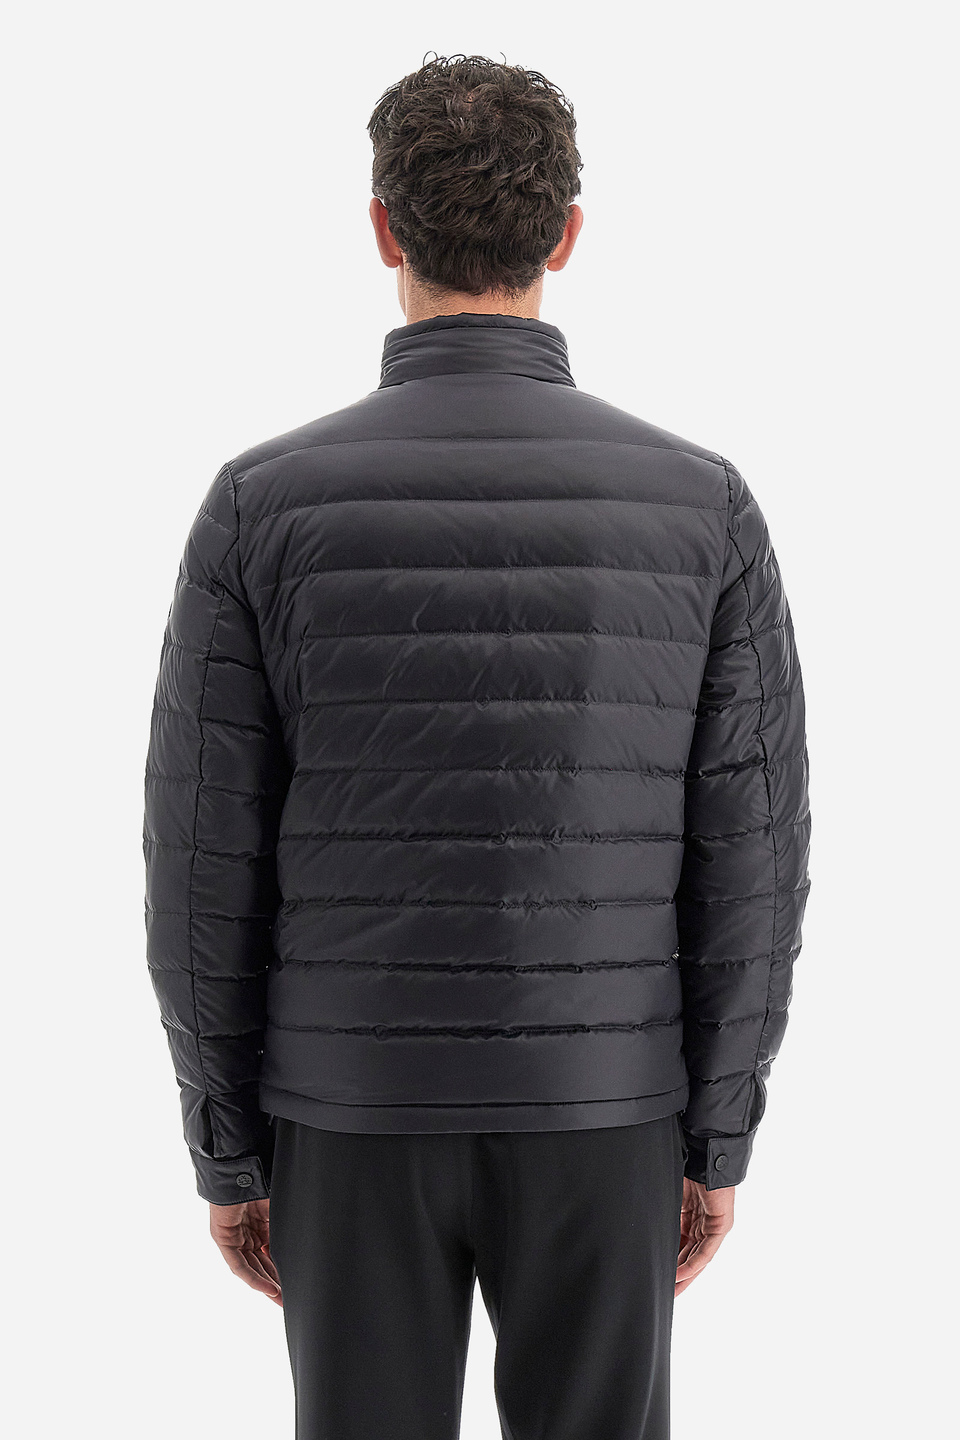 Herren -Outdoor -Jacke regular fit - Way | La Martina - Official Online Shop